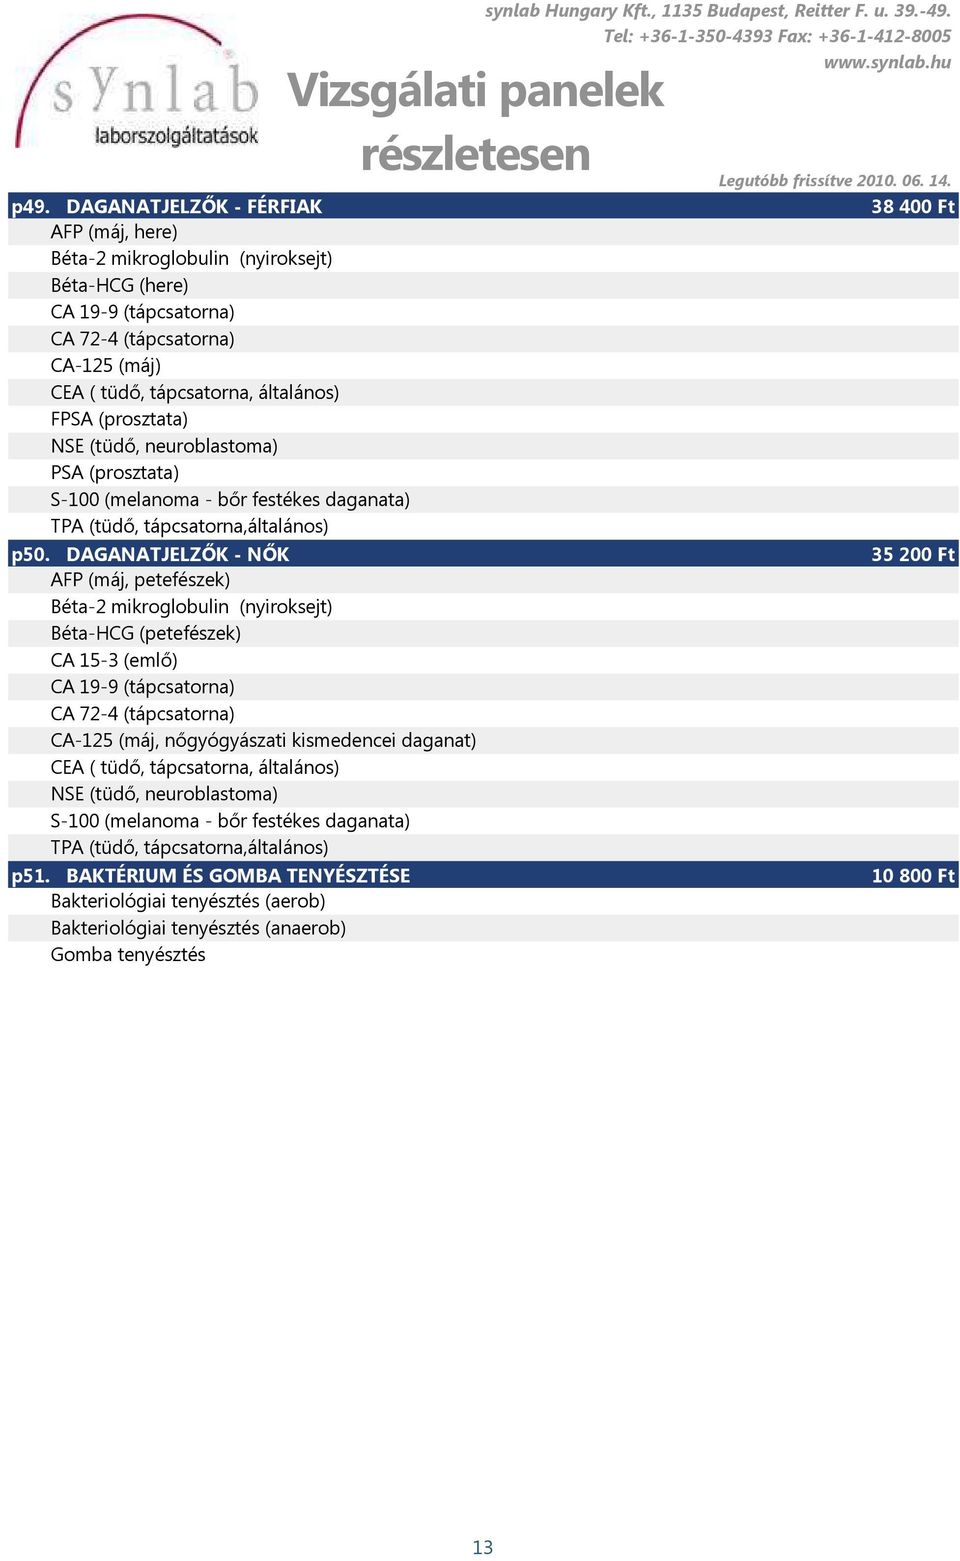 DAGANATJELZŐK - NŐK AFP (máj, petefészek) Béta-2 mikroglobulin (nyiroksejt) Béta-HCG (petefészek) CA 15-3 (emlő) CA 19-9 (tápcsatorna) CA 72-4 (tápcsatorna) CA-125 (máj, nőgyógyászati kismedencei